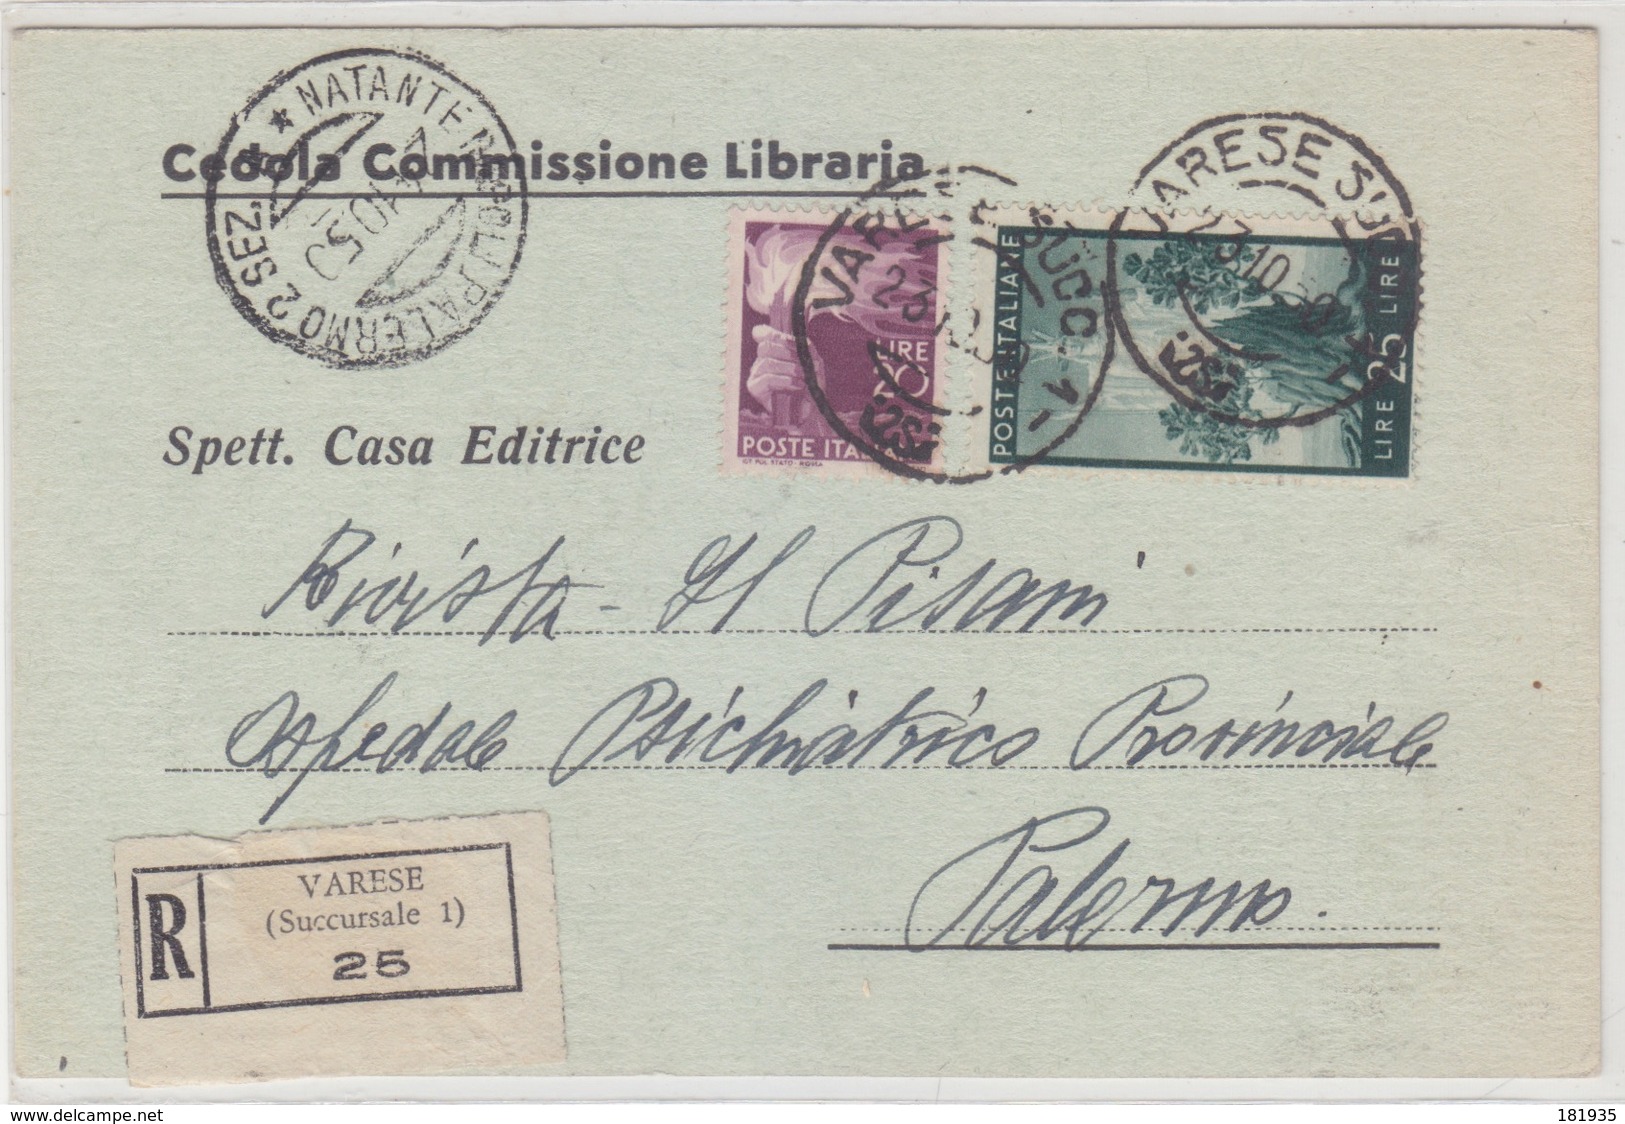 Cover Lettera Cedola Commissione Libraria Raccomandata Affr. Democr.-Viaggiata Italy Italia - 1946-60: Storia Postale